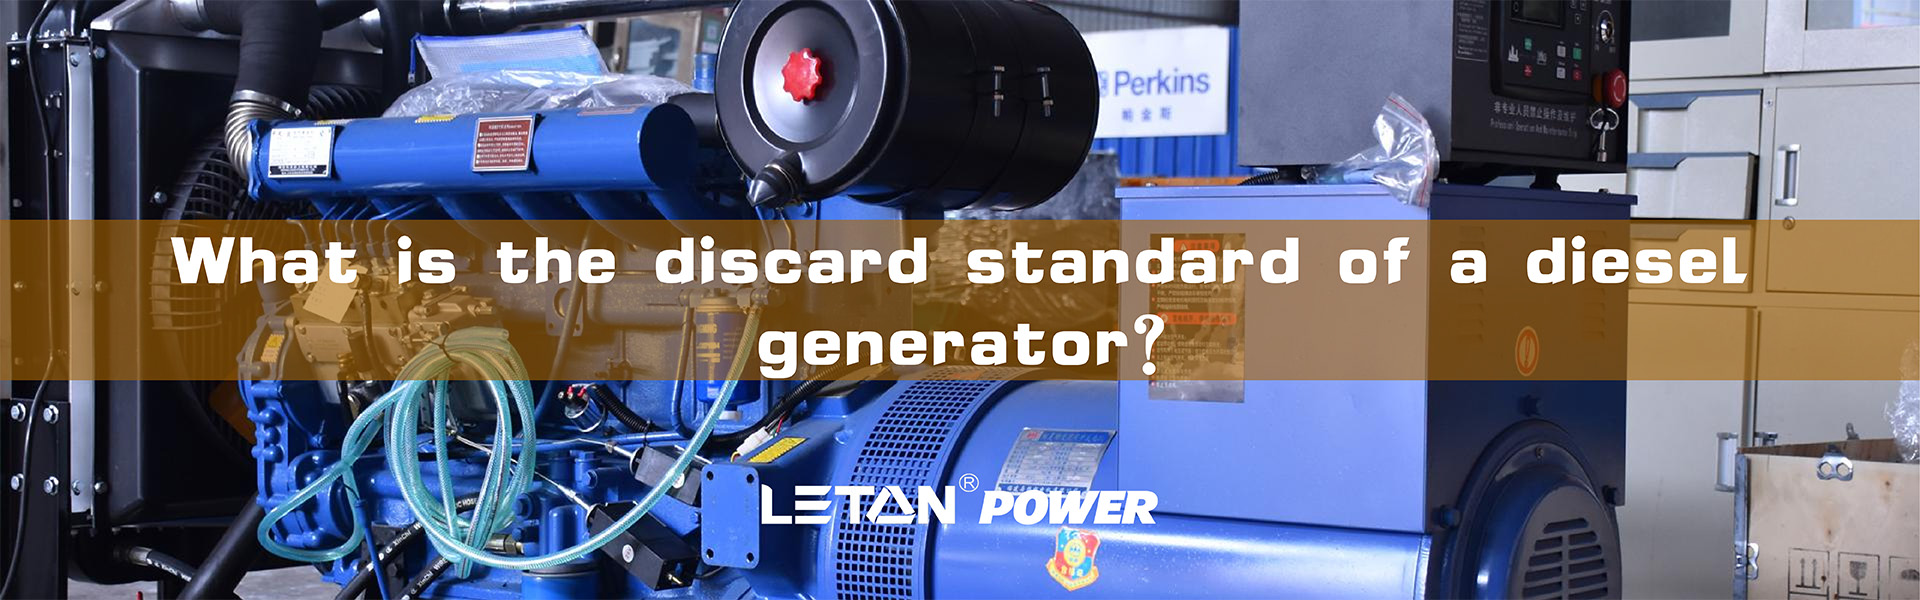 Који је стандард одбацивања дизел генератора?